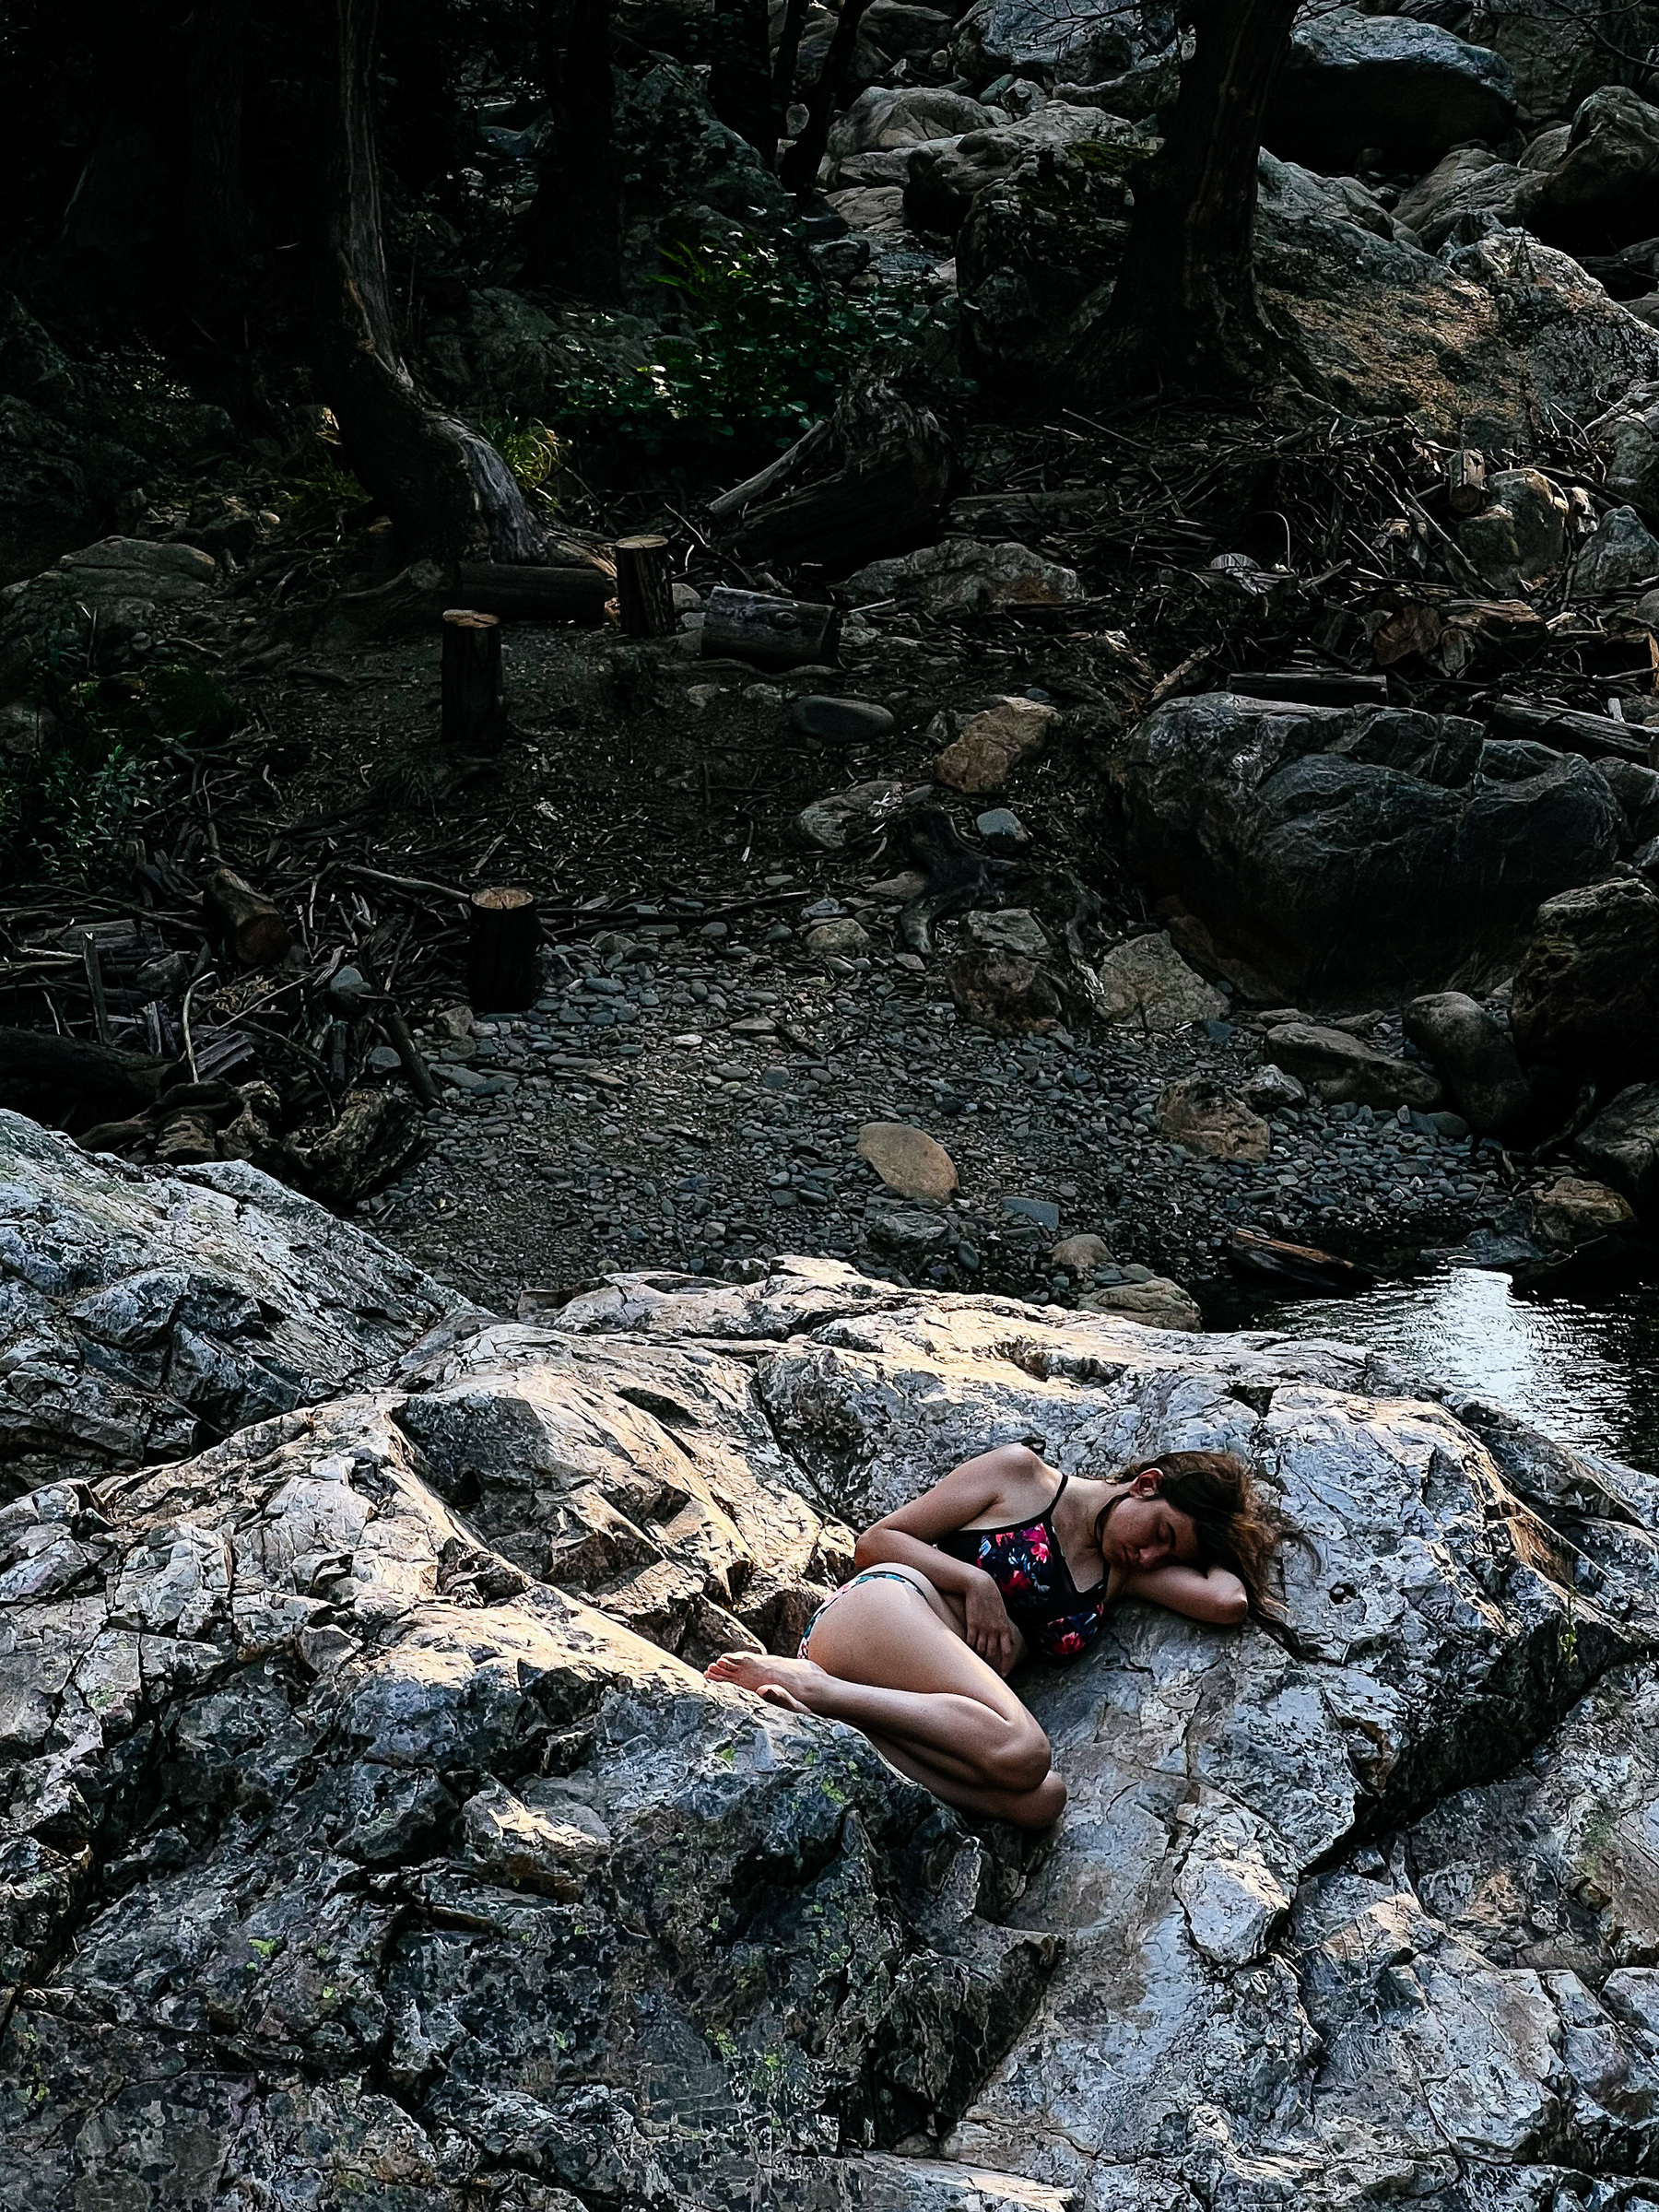 A girl sunbathing on a rock. 